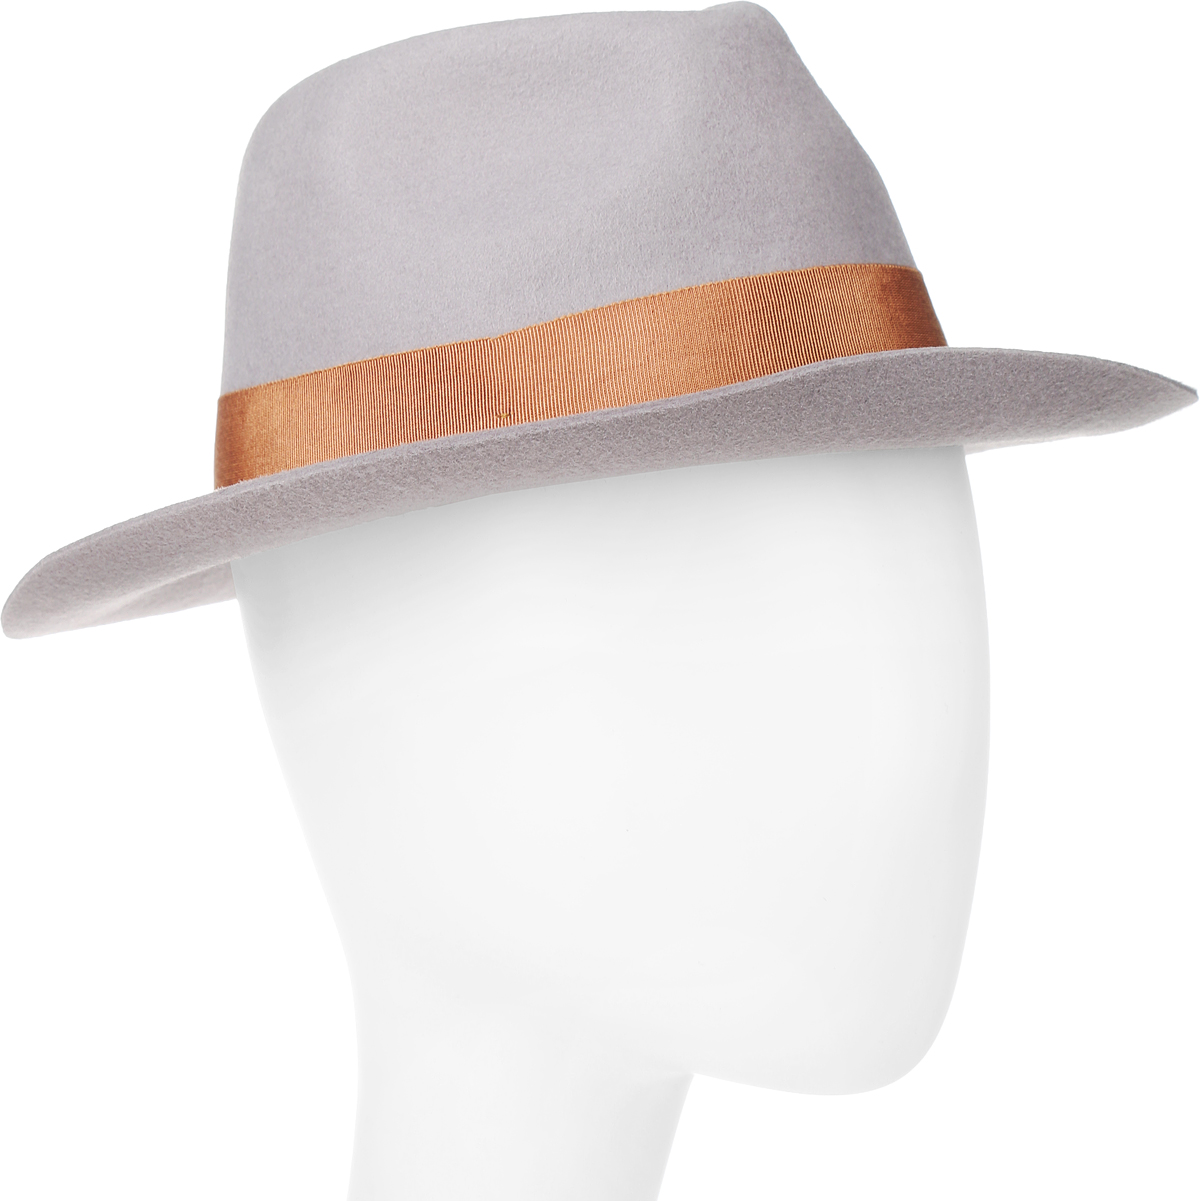 Шляпа Goorin Brothers, цвет: светло-серый. 100-9877. Размер M (57)